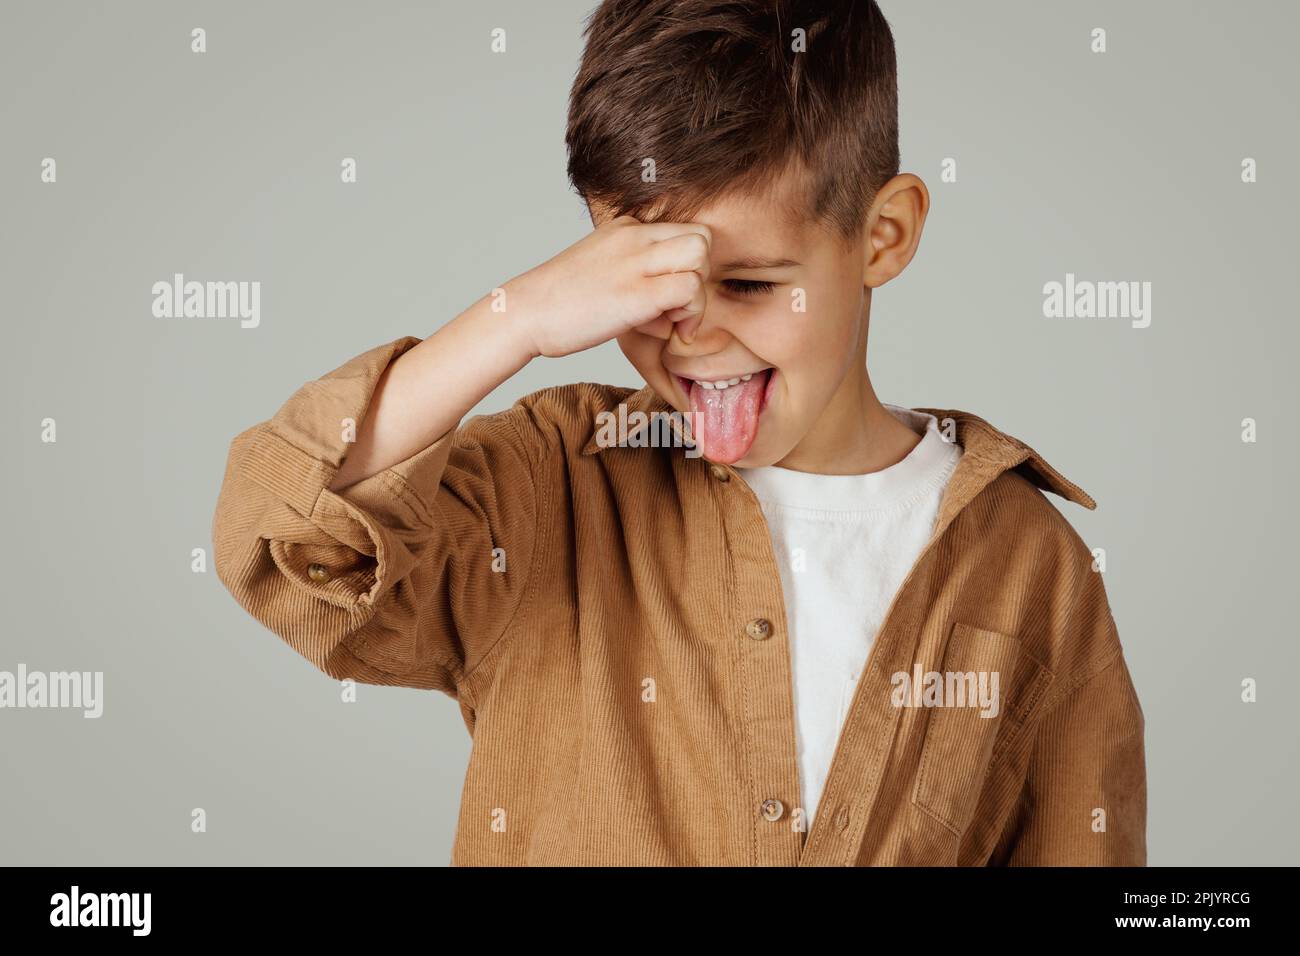 Capretto caucasico disgruntled di 6 anni in casual coprendo il naso con la mano Foto Stock